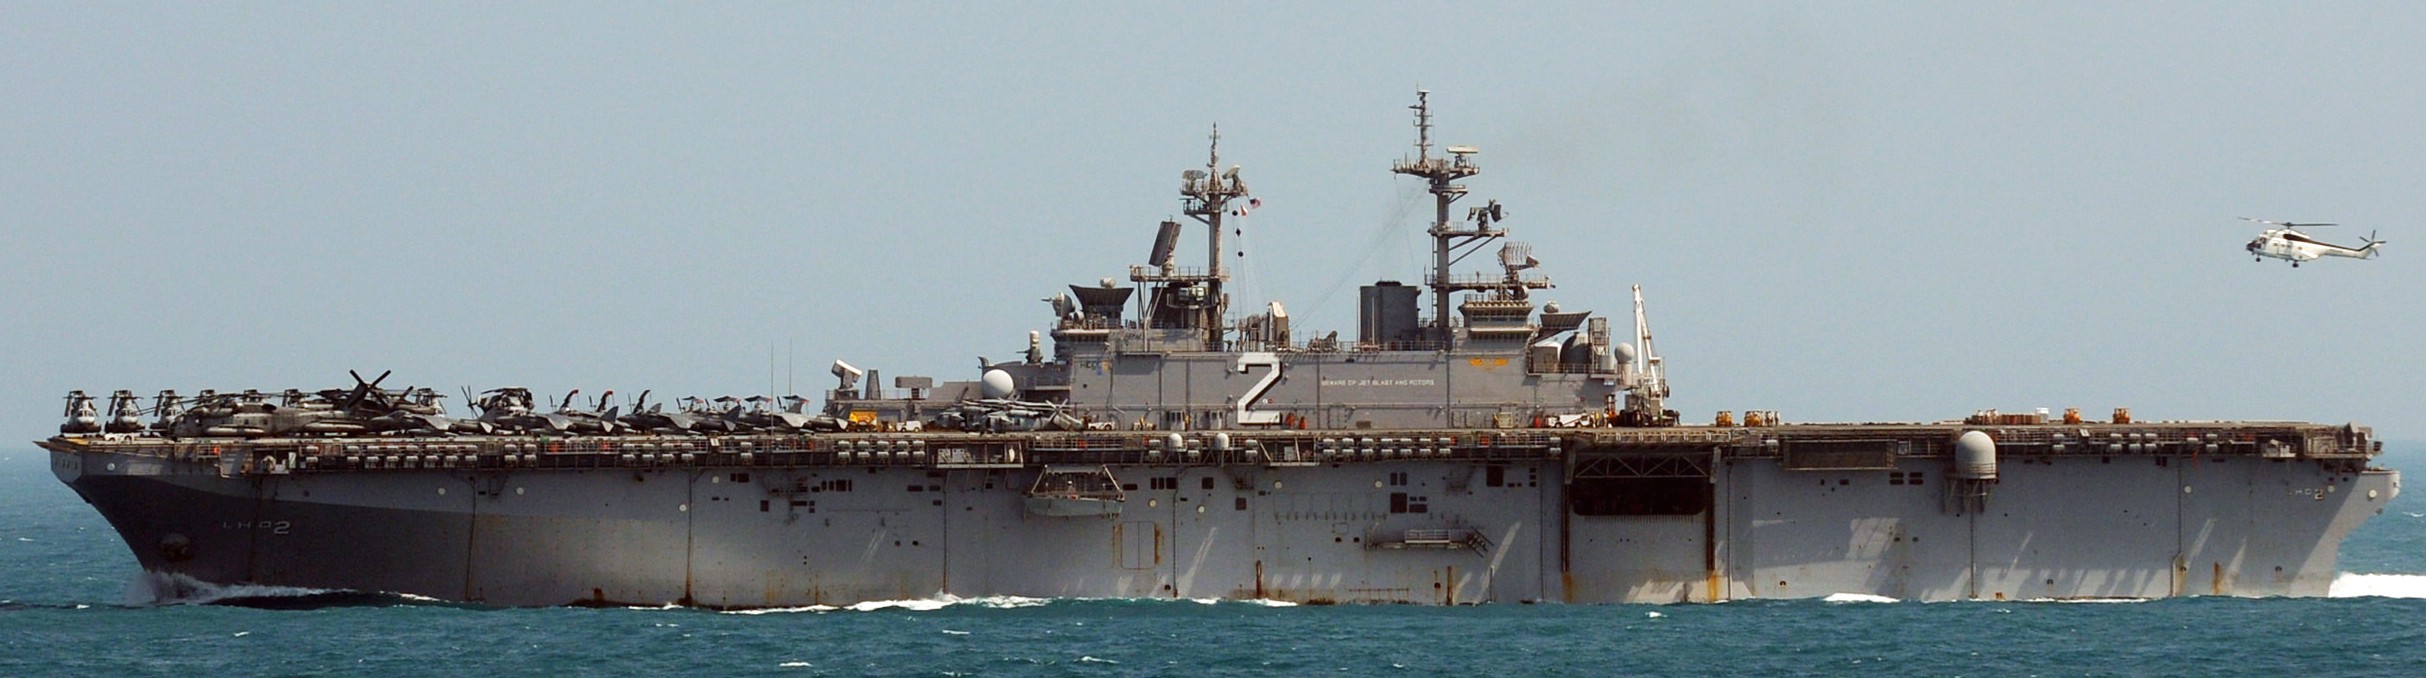 lhd-2 uss essex wasp class amphibious assault ship landing helicopter us navy marines hmm-262 92